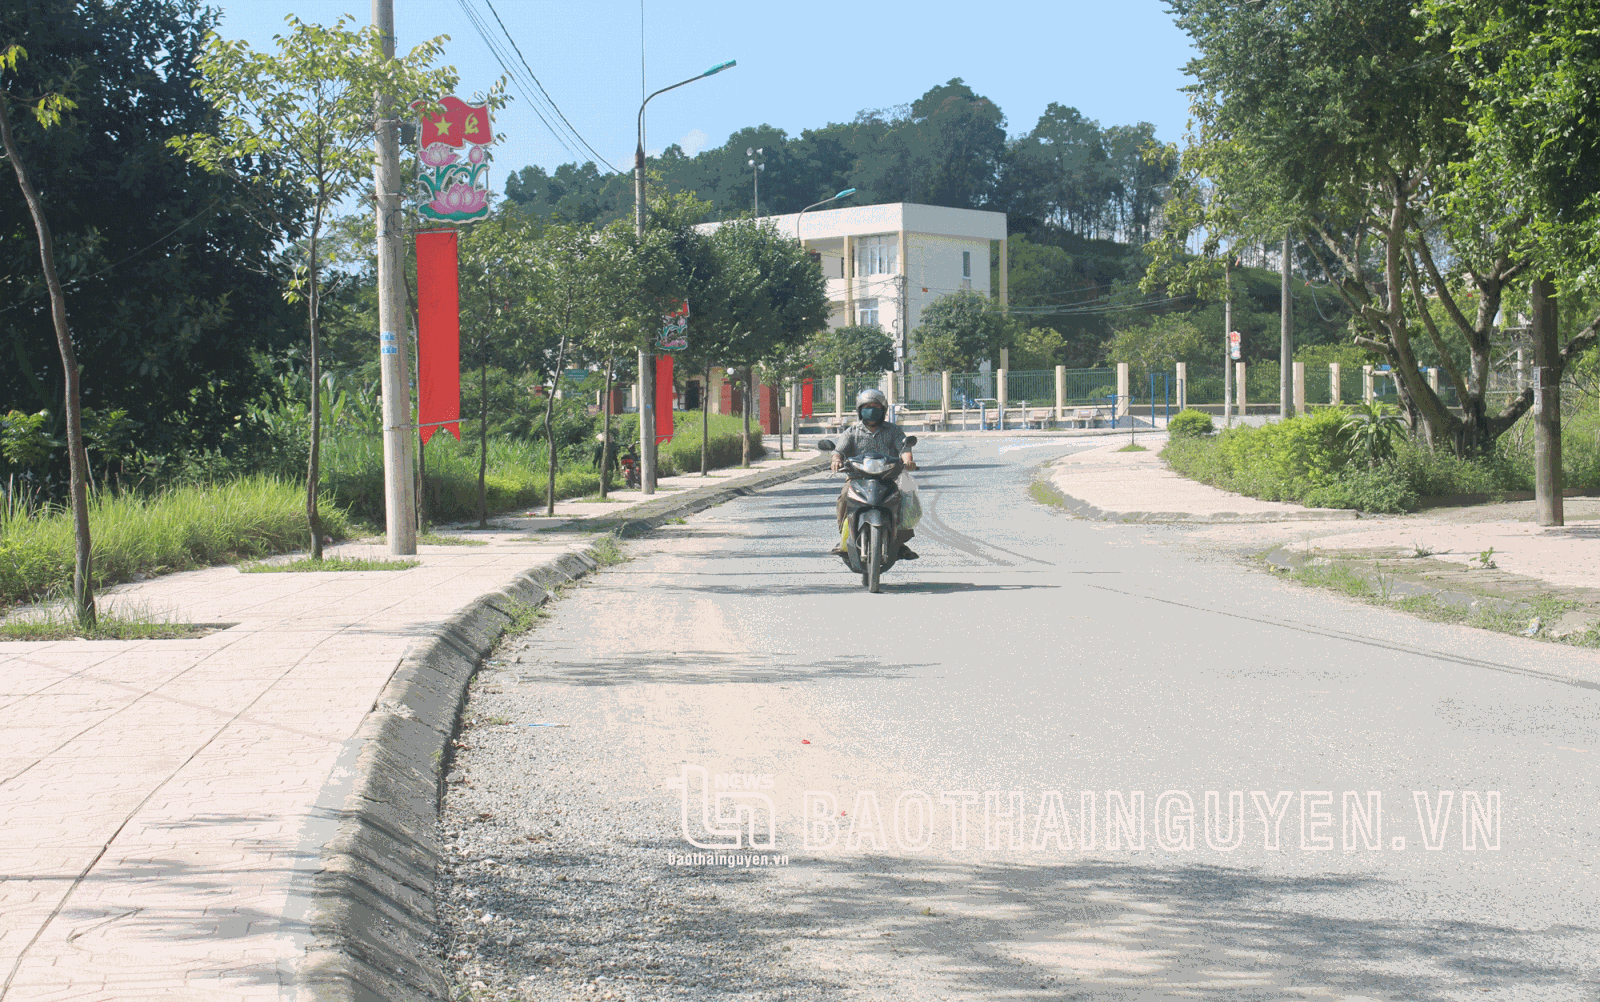  Hiện nay, hệ thống giao thông trên địa bàn xã Tân Quang được đầu tư xây dựng, nâng cấp và cải tạo, đáp ứng ngày một tốt hơn nhu cầu của nhân dân.